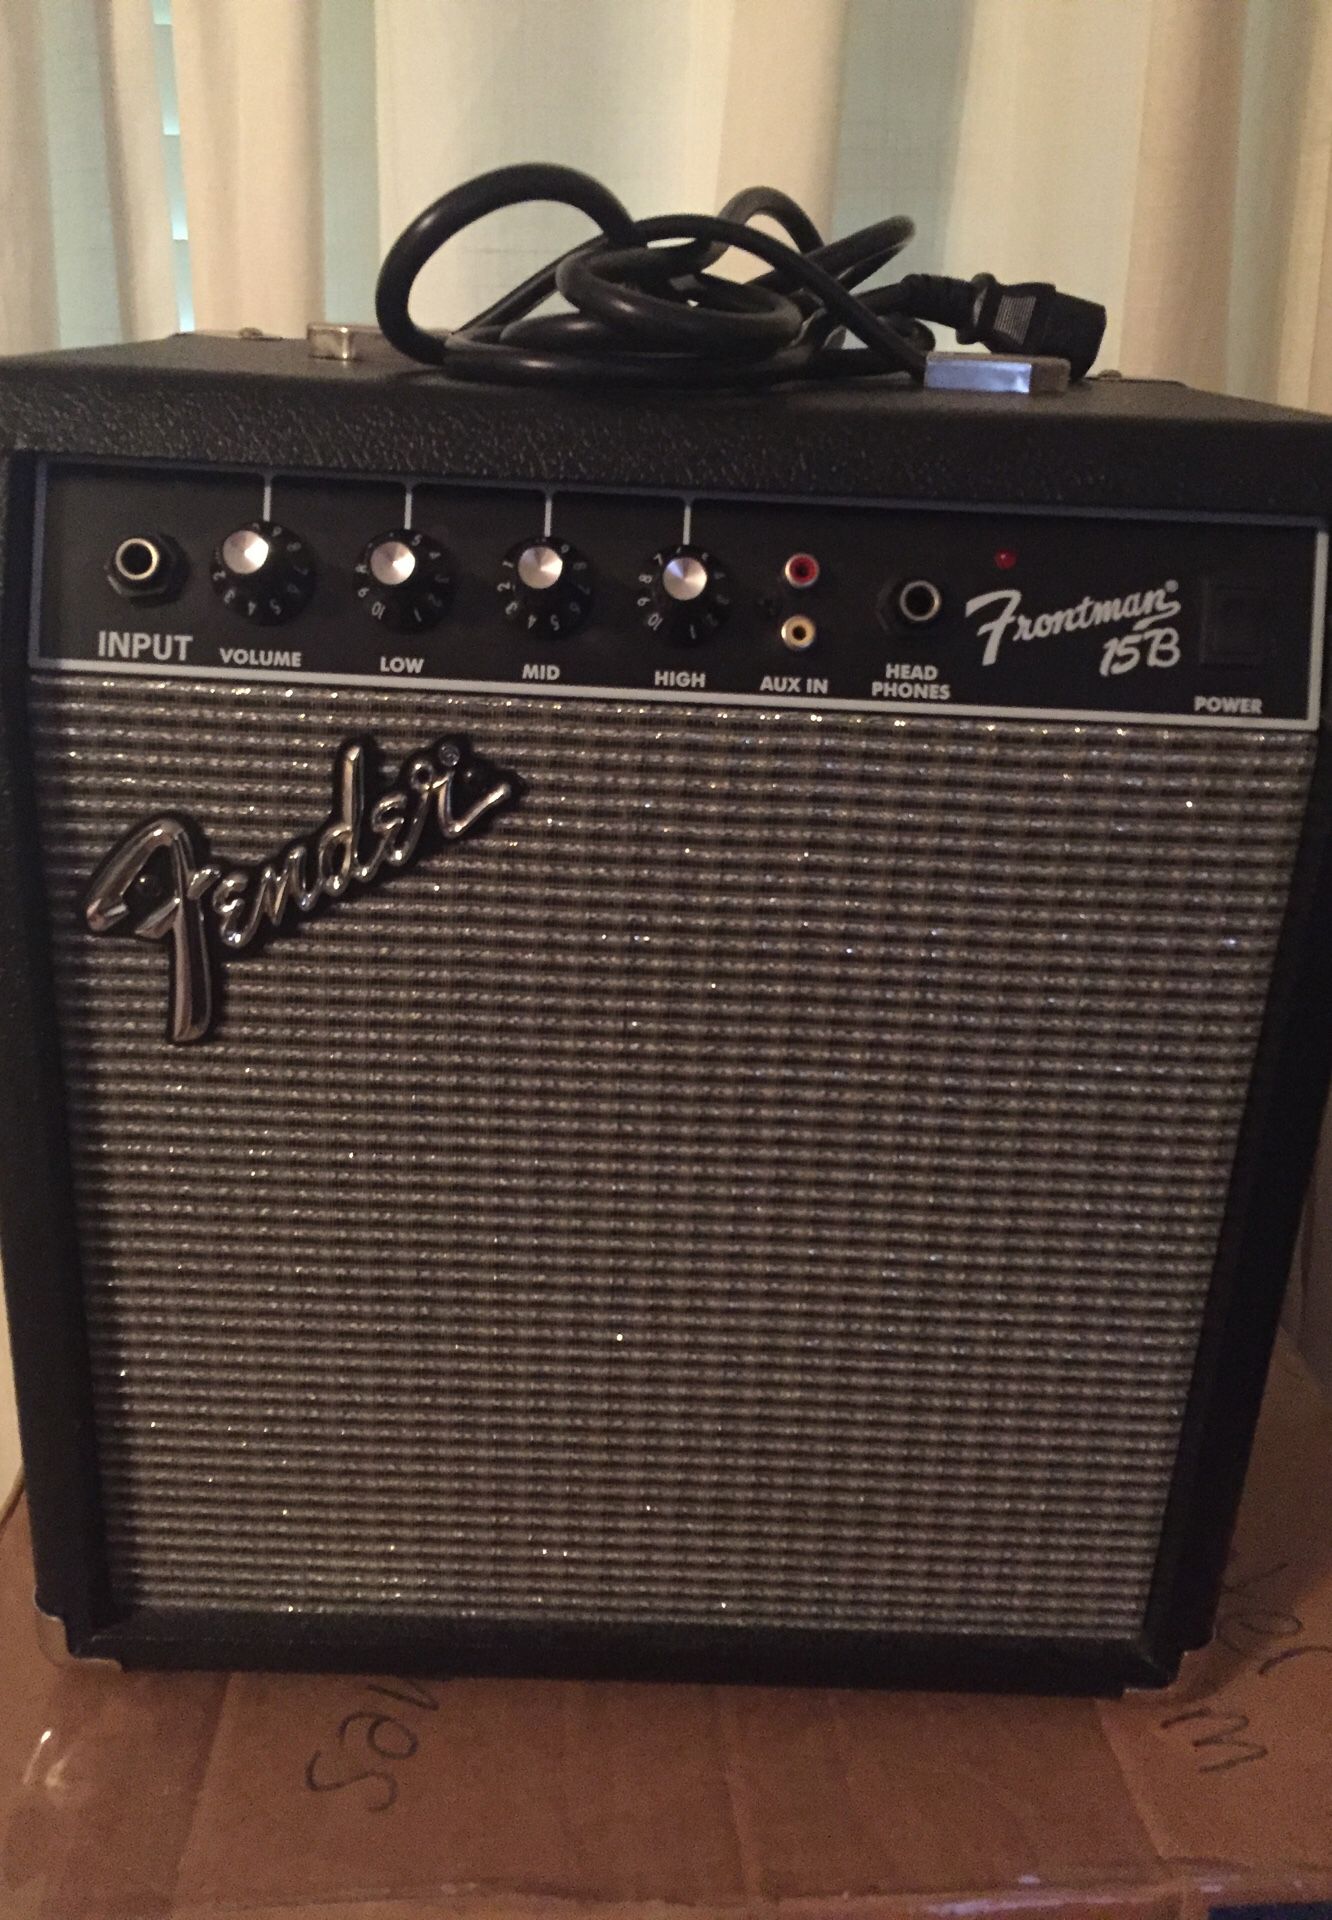 Fender Frontman 15B Amplifier 38w